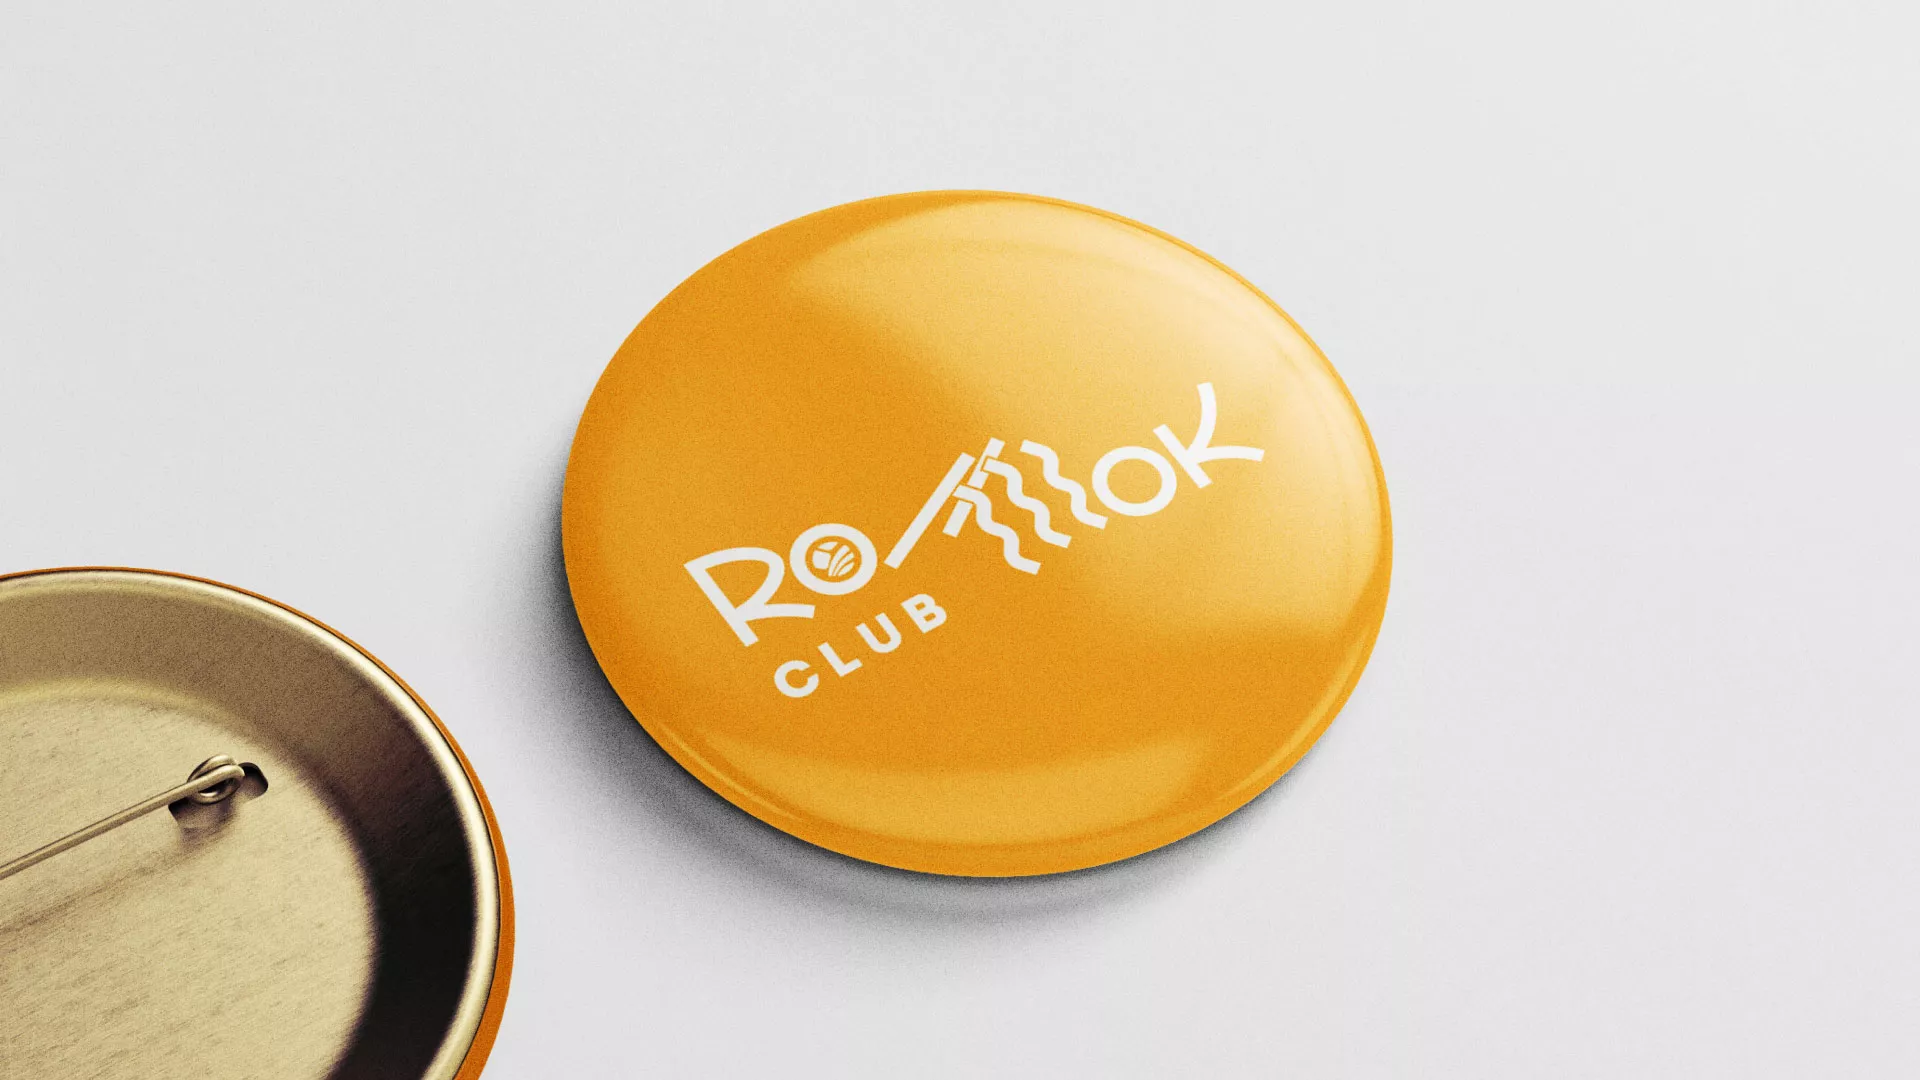 Создание логотипа суши-бара «Roll Wok Club» в Вышнем Волочке